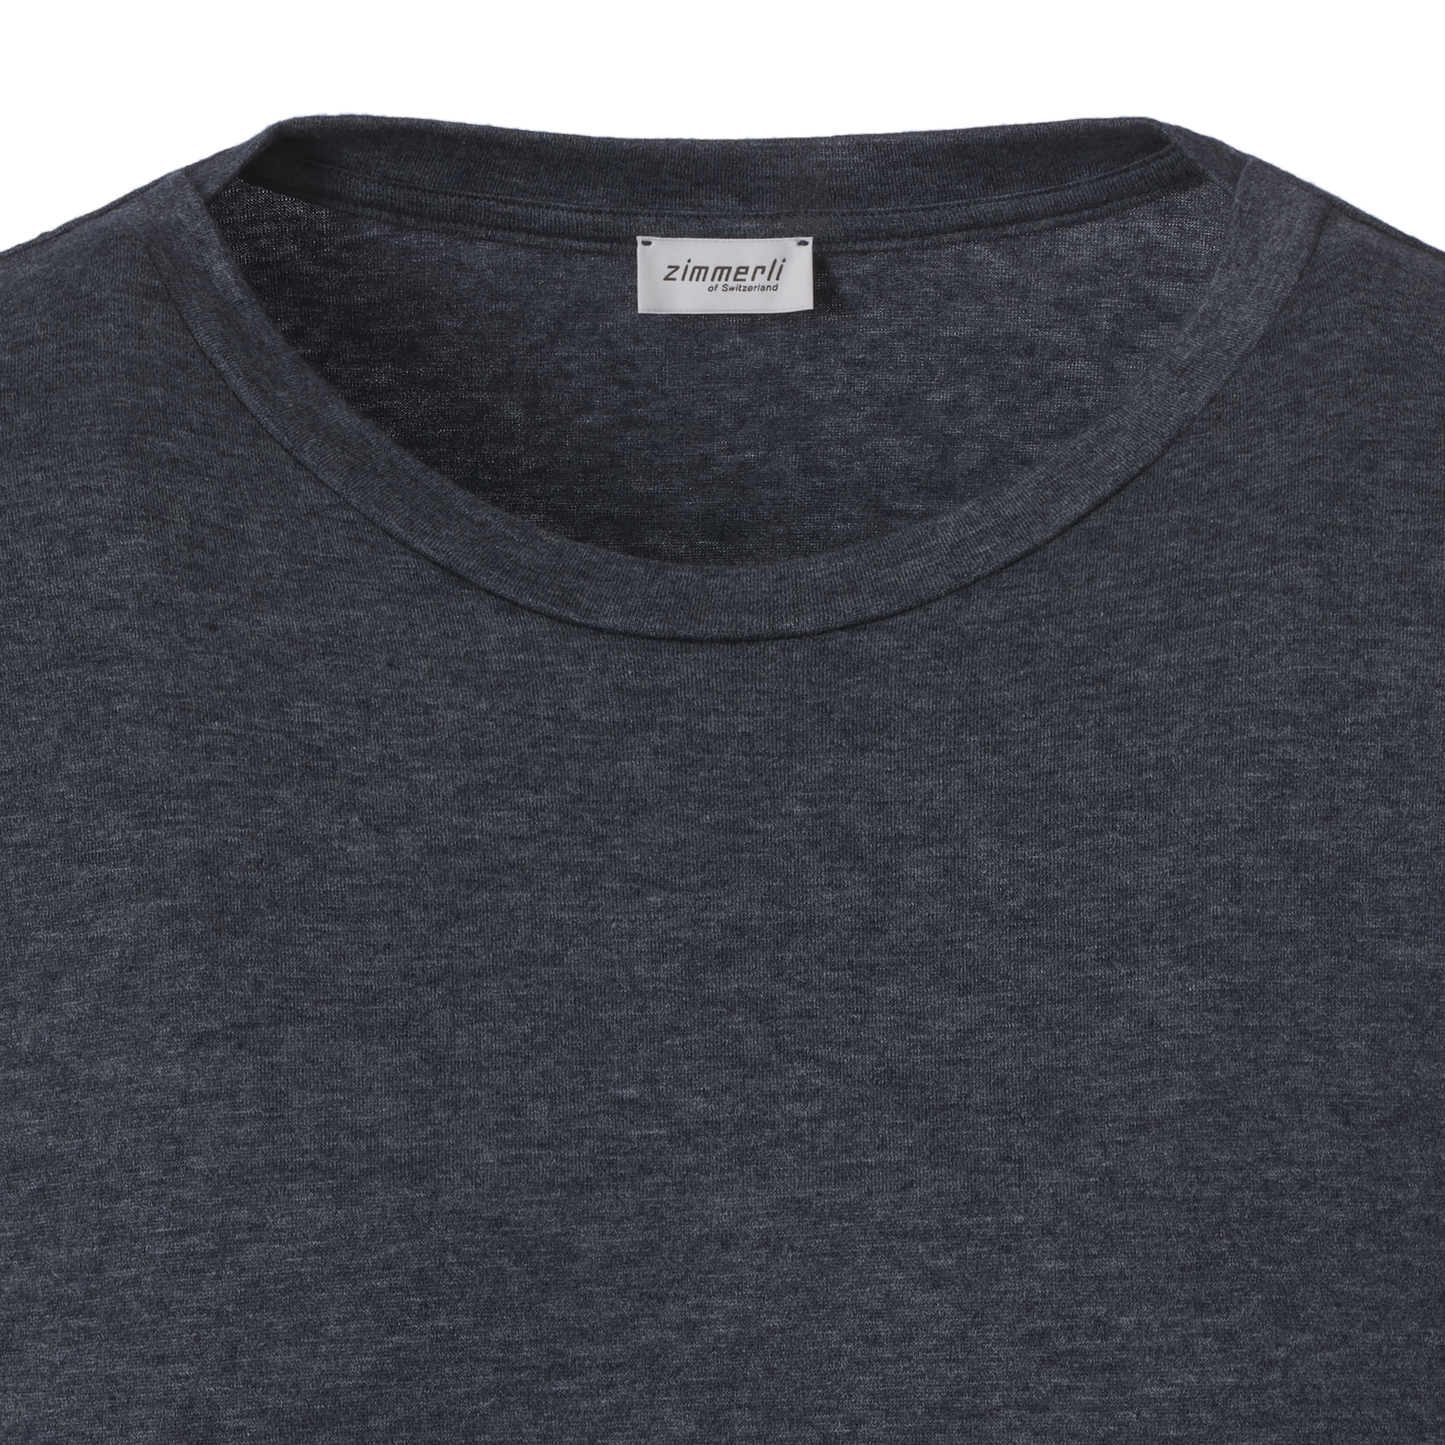 Langärmliges T-Shirt aus Baumwoll- und Kaschmirmischung in Blau meliert